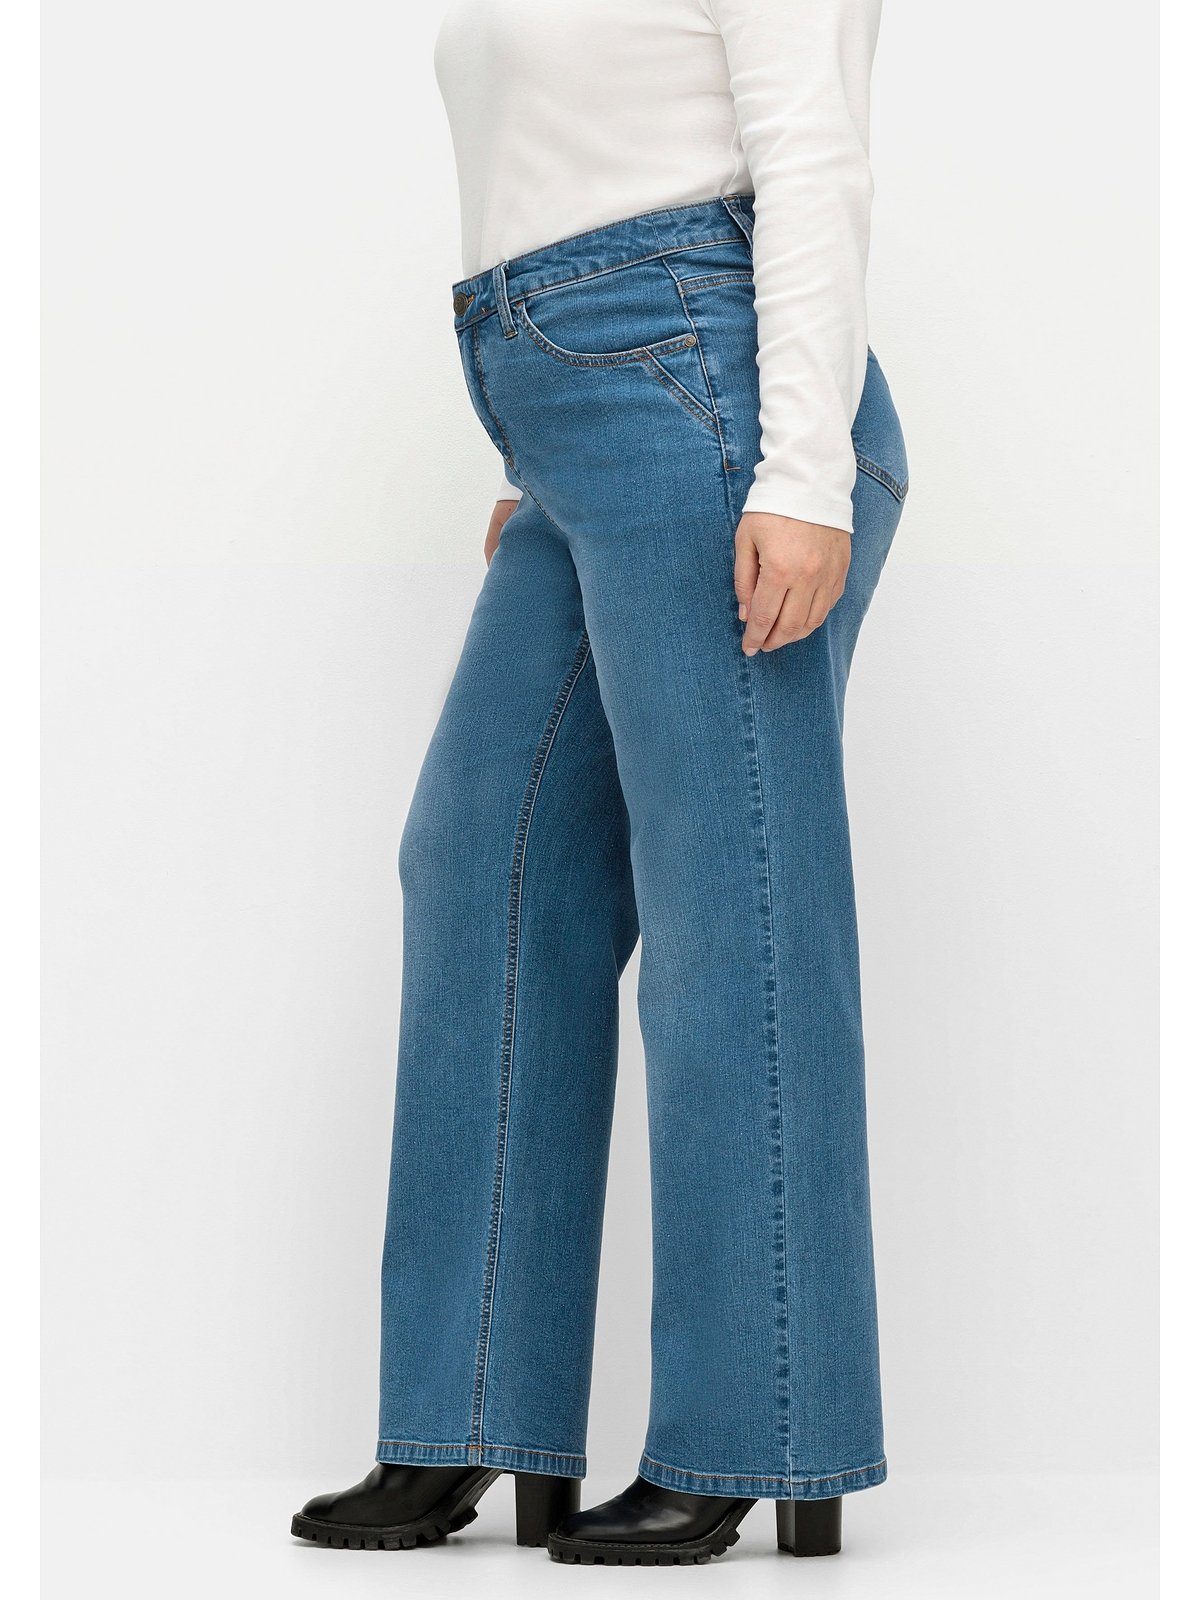 Waden kräftige Große Jeans Denim Weite und Oberschenkel ELLA für Sheego blue Größen